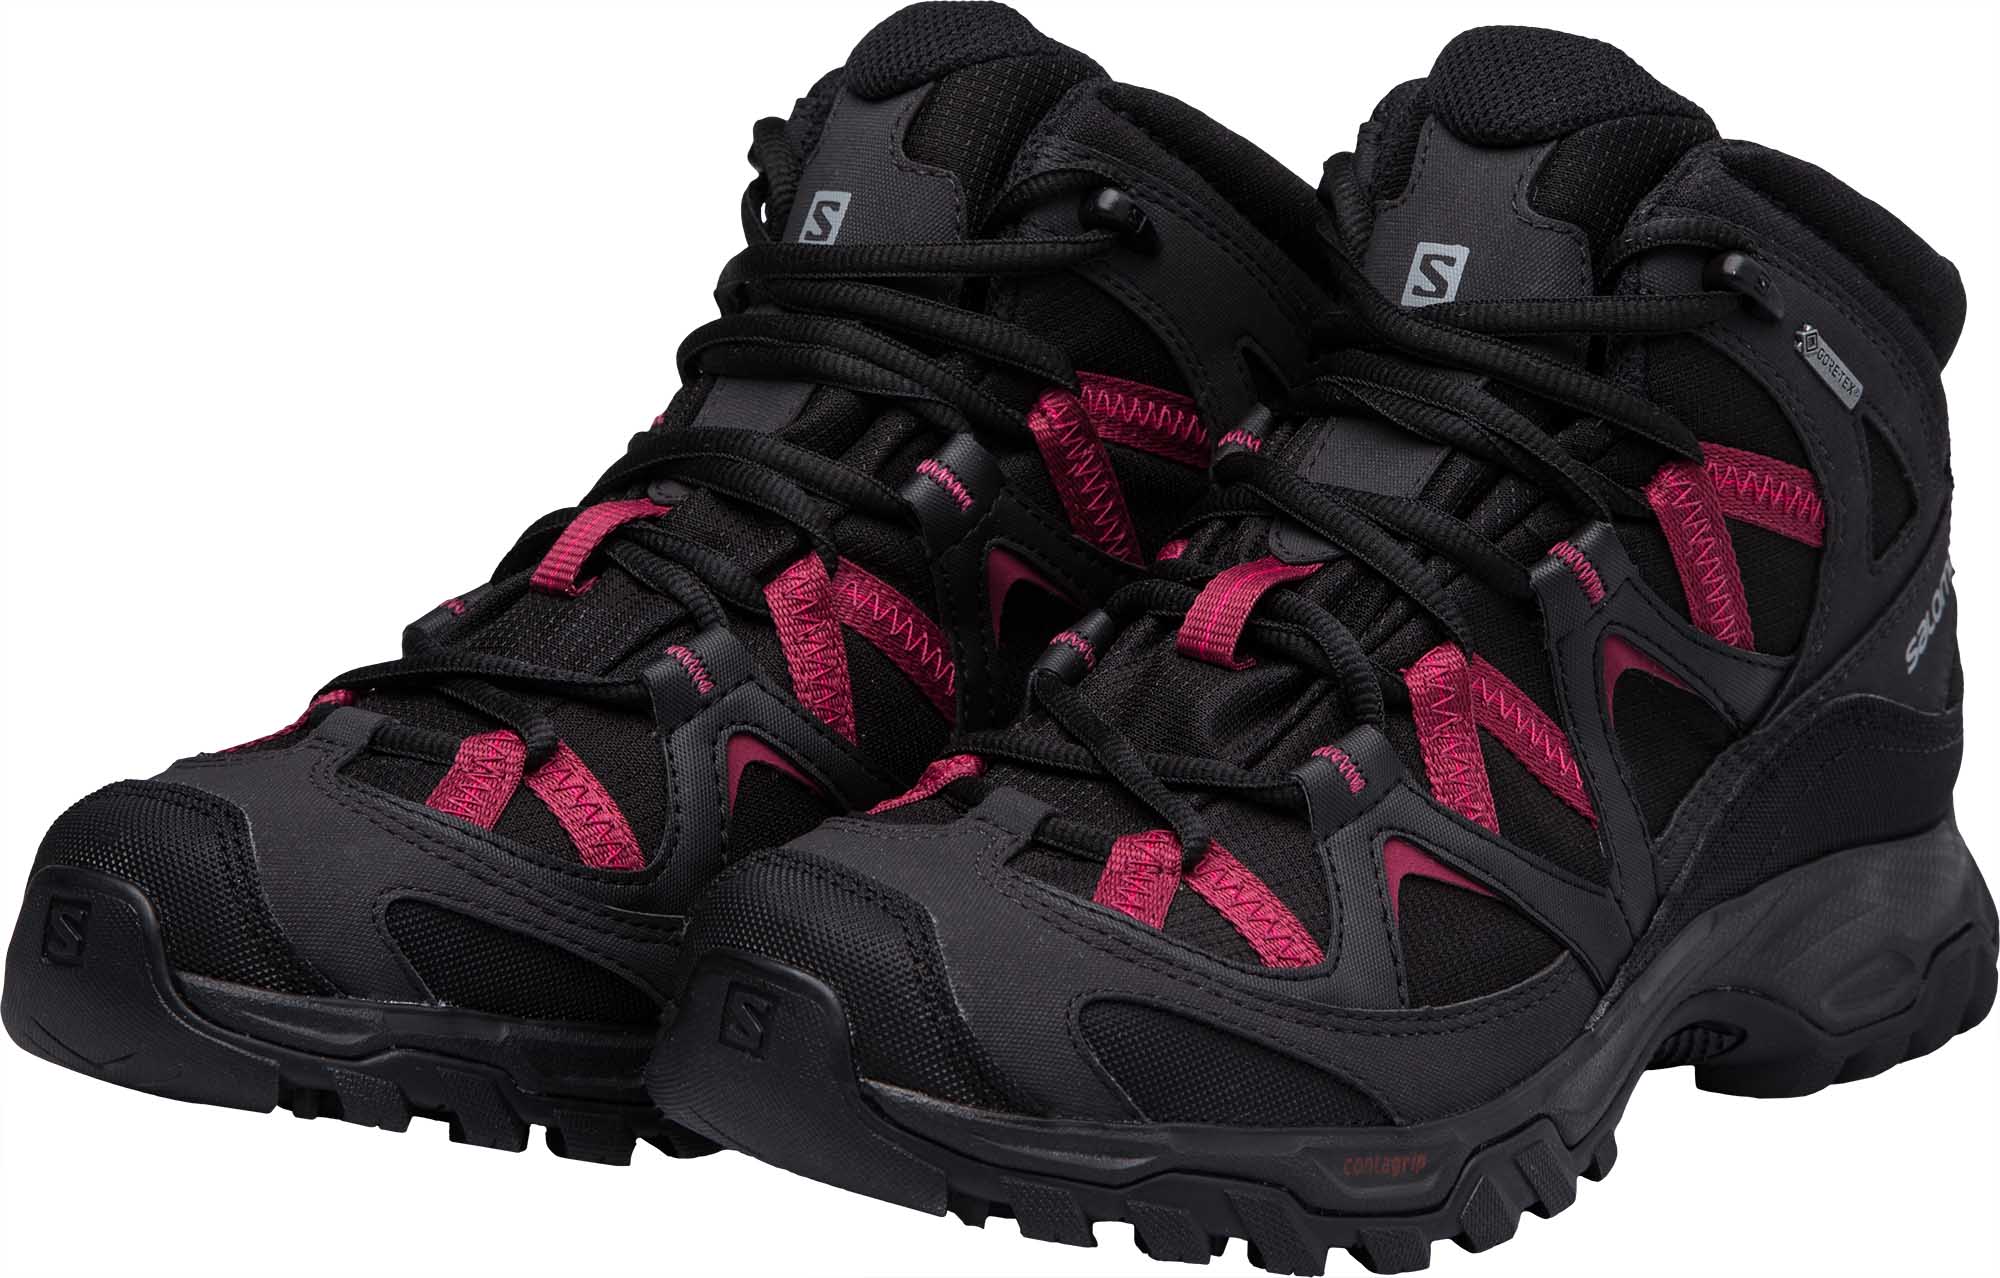 Women’s hiking shoes